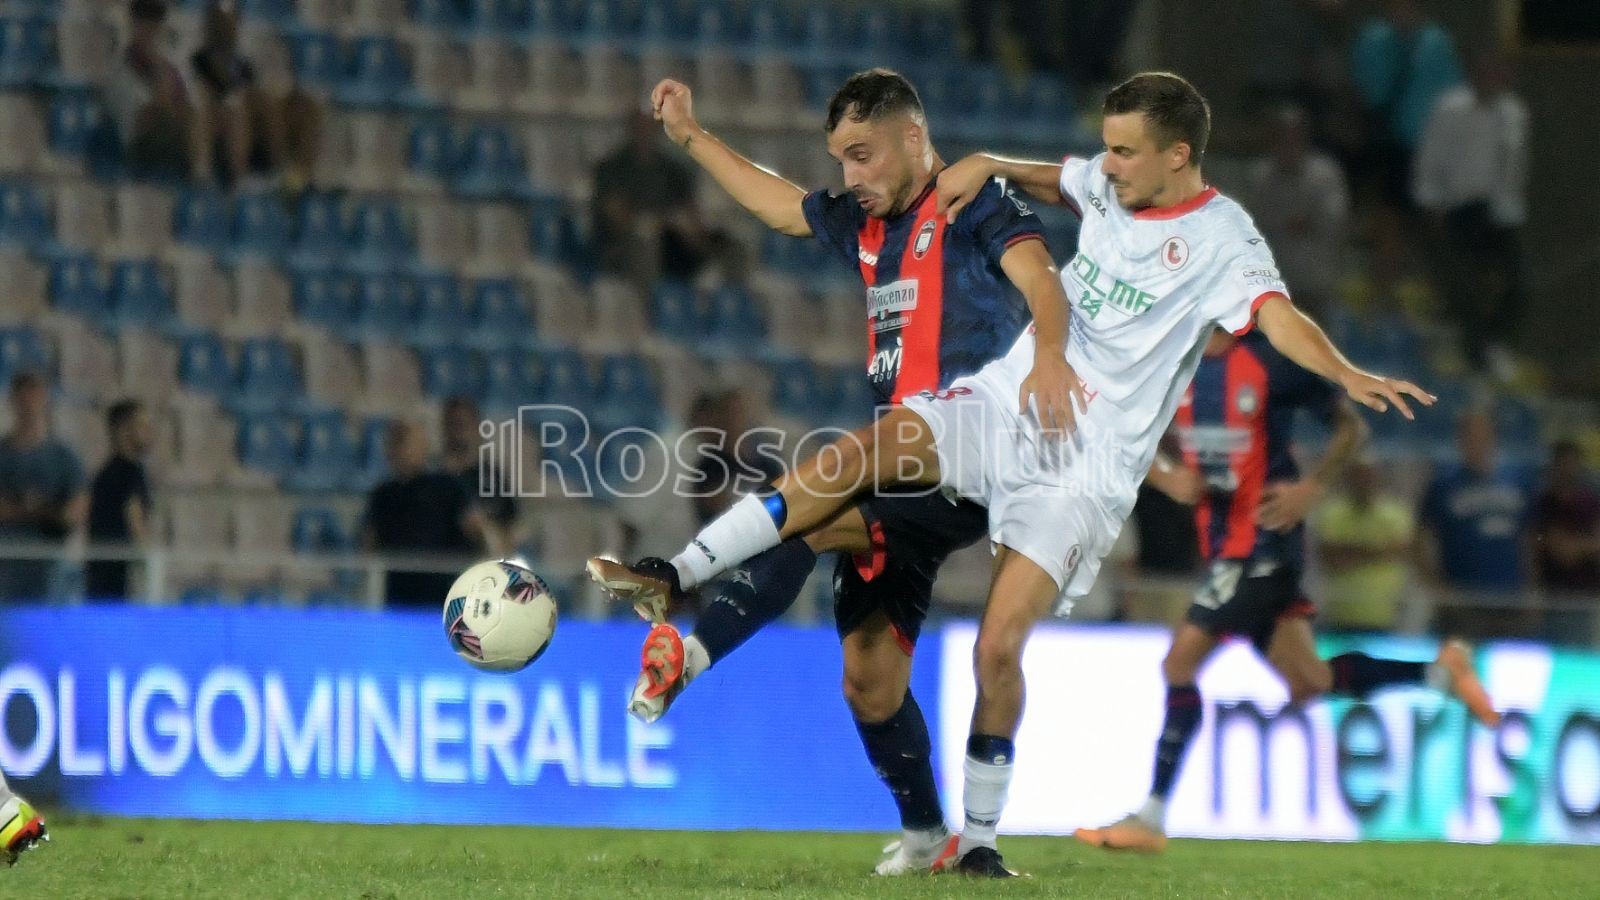 – 2 Giornata – Crotone vs Turris 2-3 – Gomez Guido (2) – (Rosito Andrea 10.09.2023)